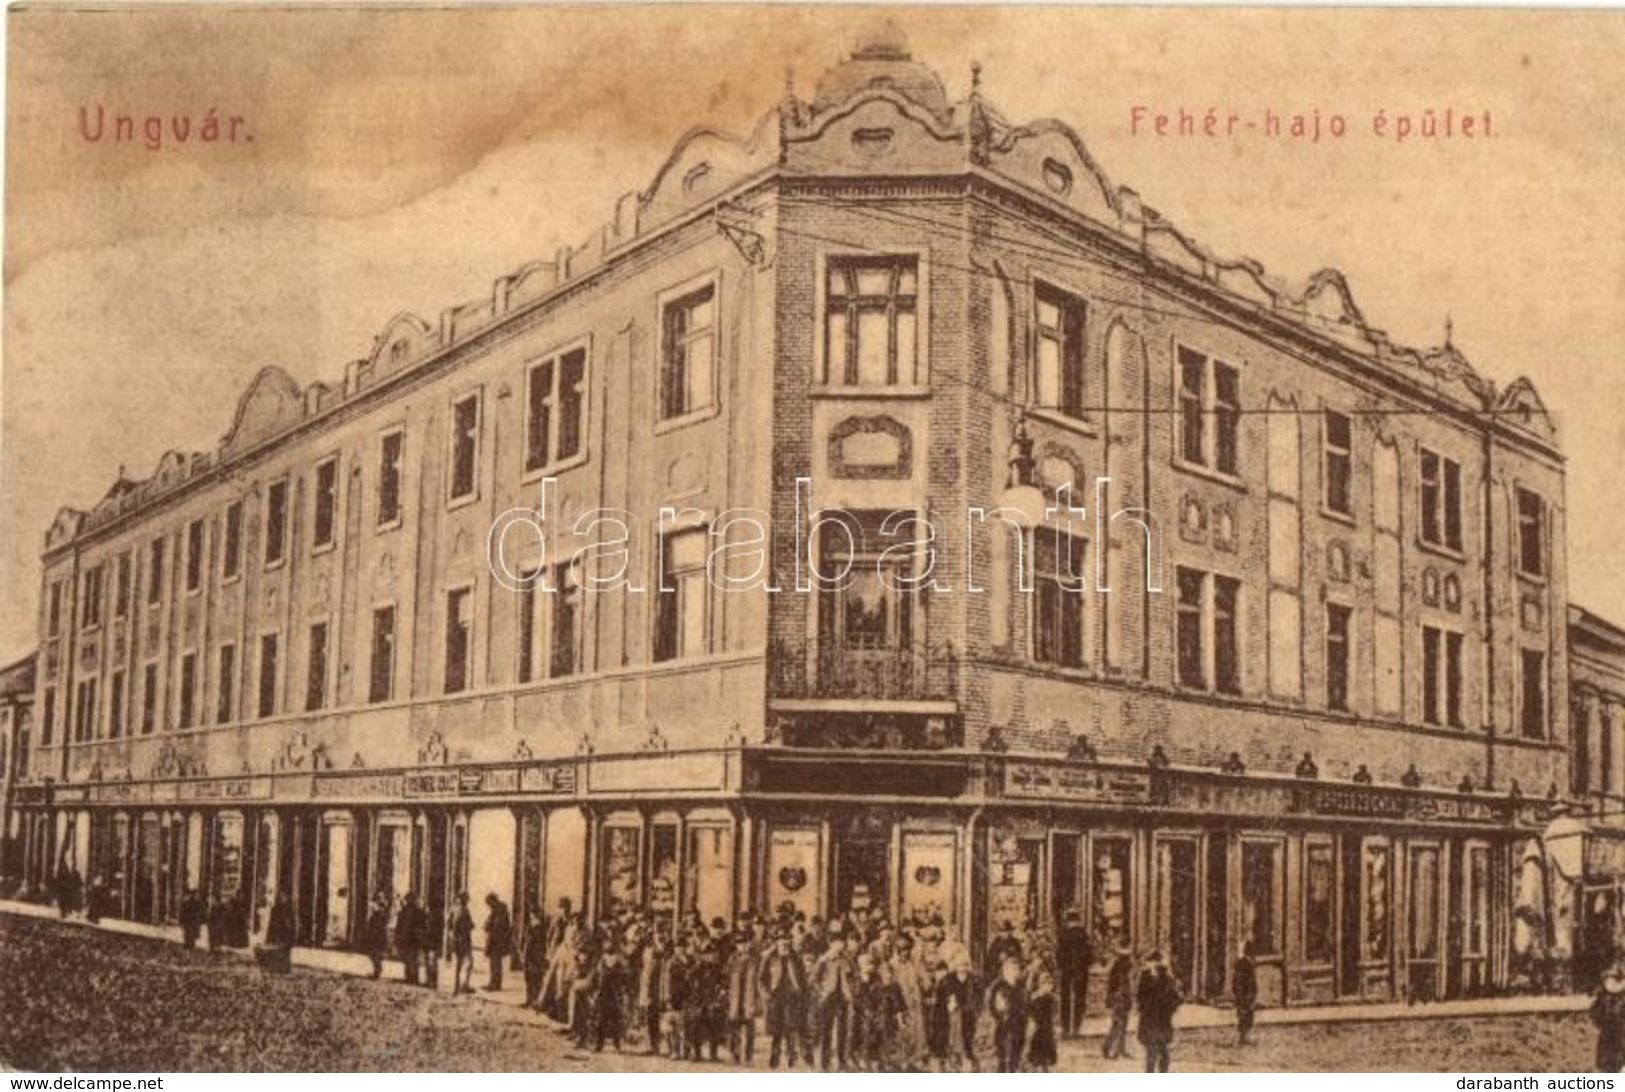 T2/T3 1909 Ungvár, Uzshorod, Uzhhorod, Uzhorod; Fehér Hajó épület, Boross Zsigmond, Beer Vilmos, Krausz, Rosenberg üzlet - Unclassified